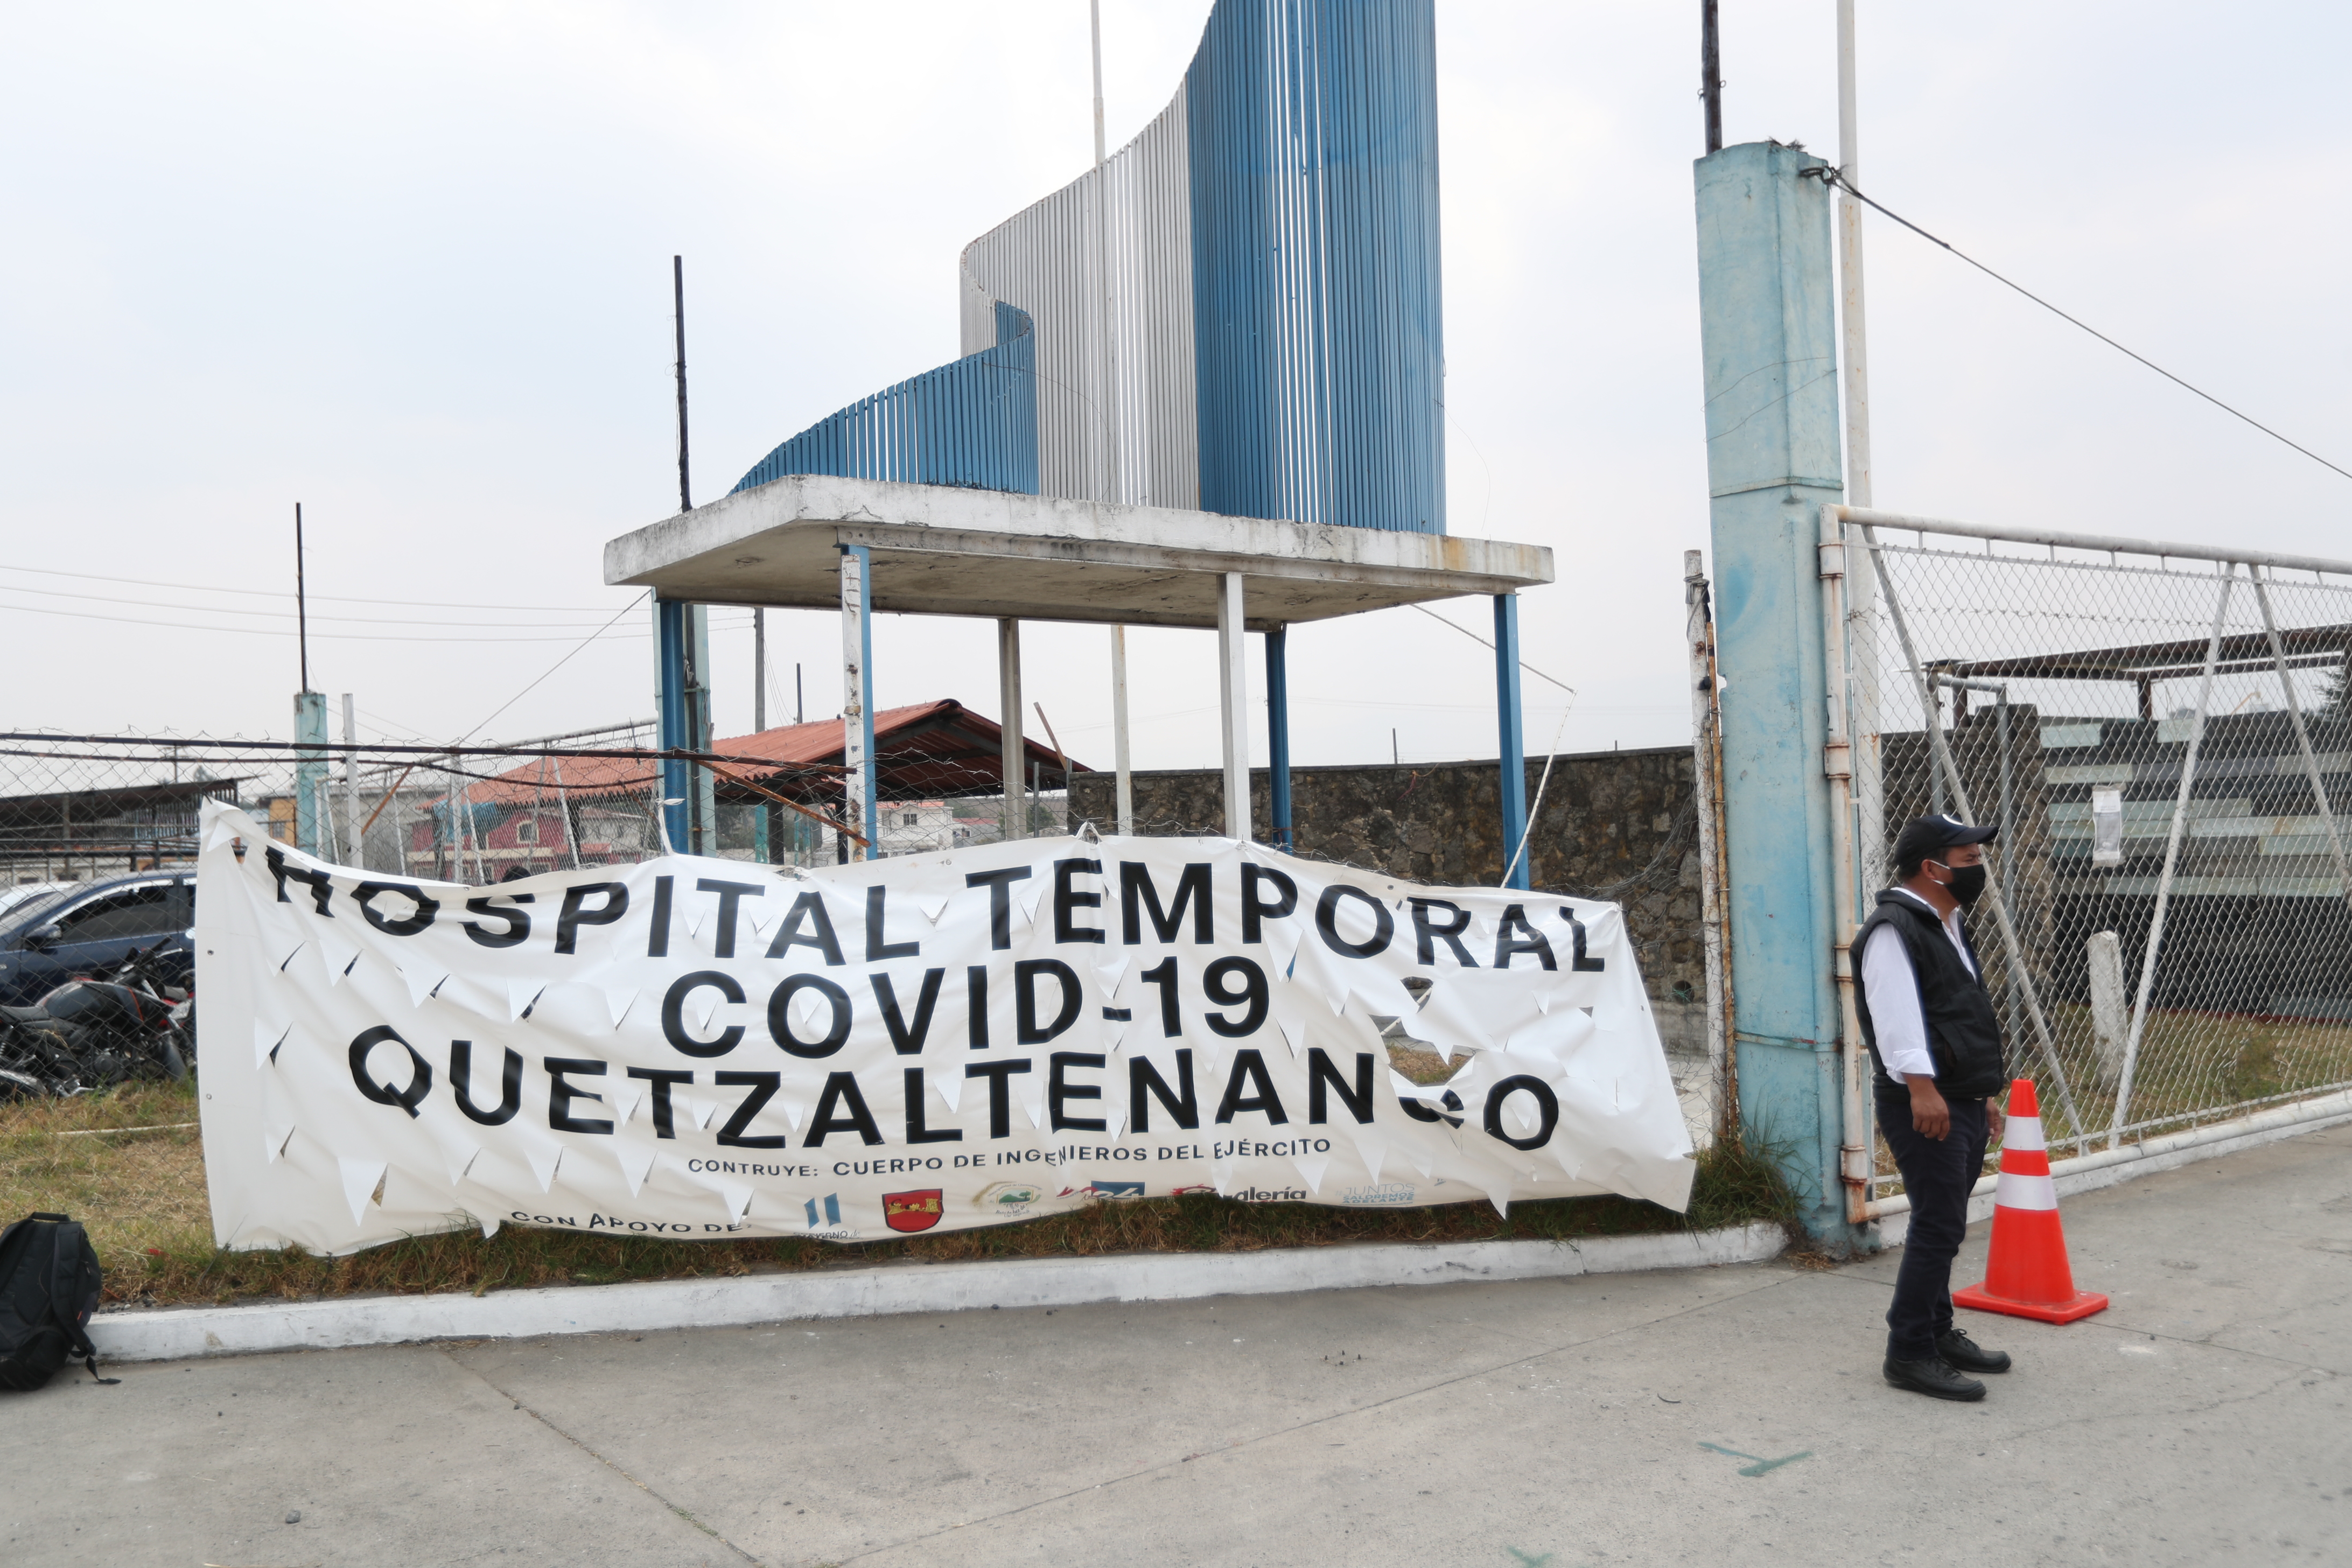 El Hospital Temporal Covid-19 Quetzaltenango funciona desde el 15 de abril y se desconoce la cifra de sus pacientes. (Foto Prensa Libre: María Longo) 